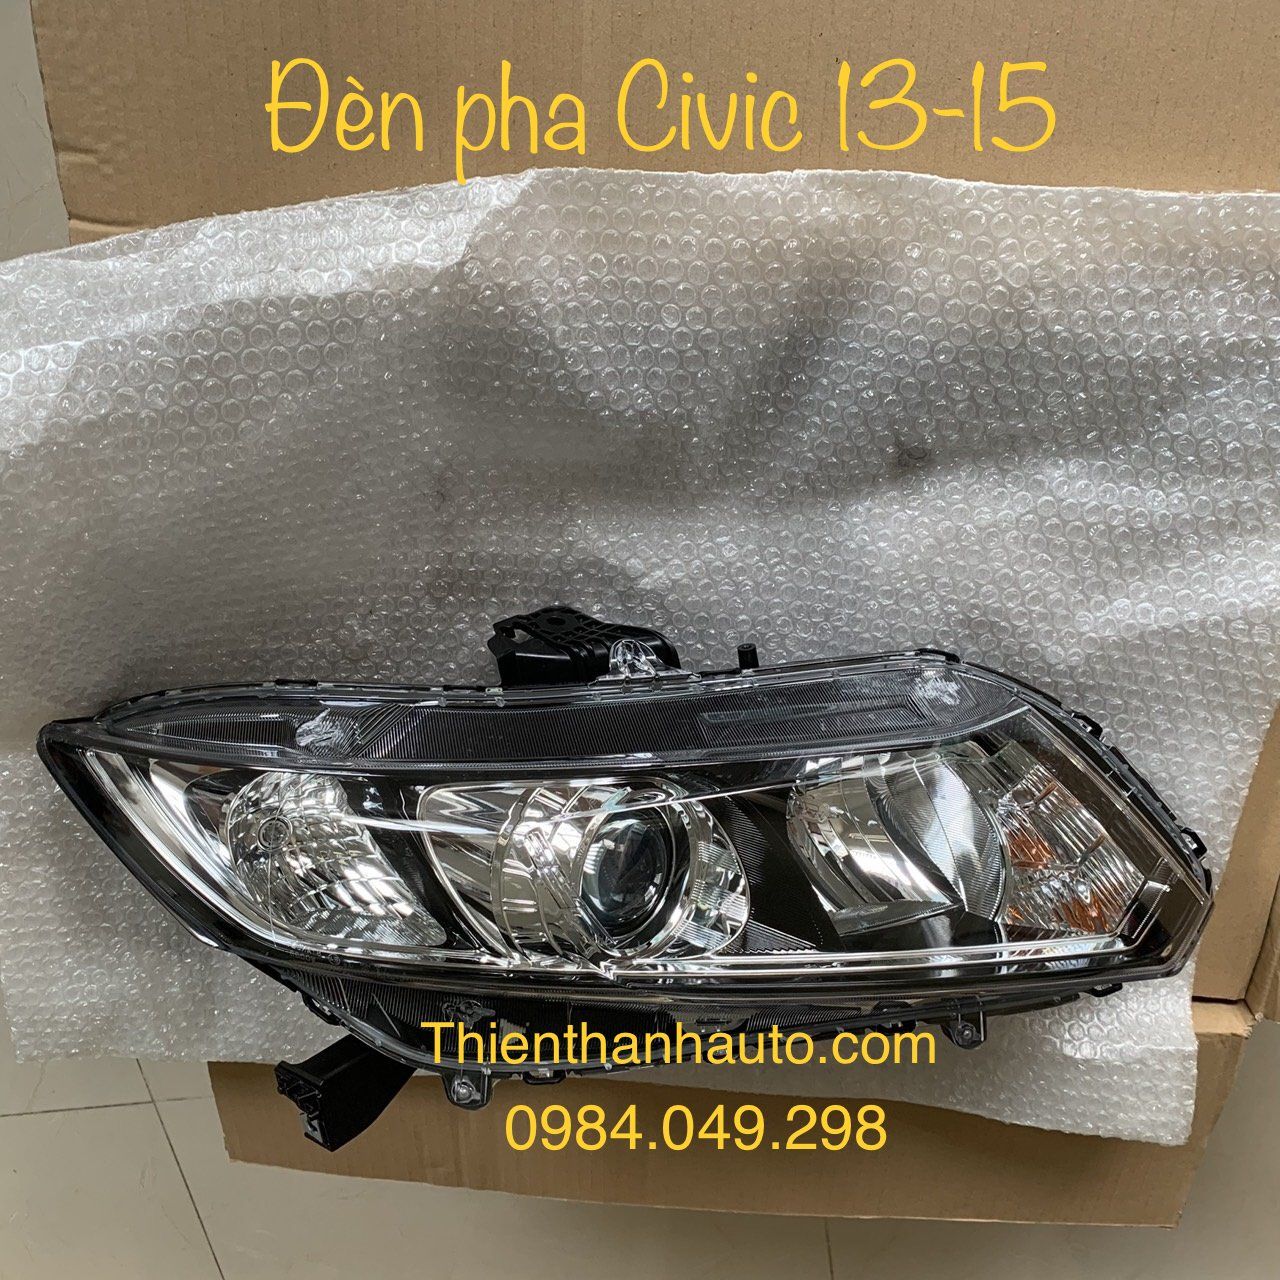 Đèn pha phải (bên phụ) Honda Civic 2013-2015 chính hãng, giá tốt - Phụ tùng ô tô Thiên Thanh